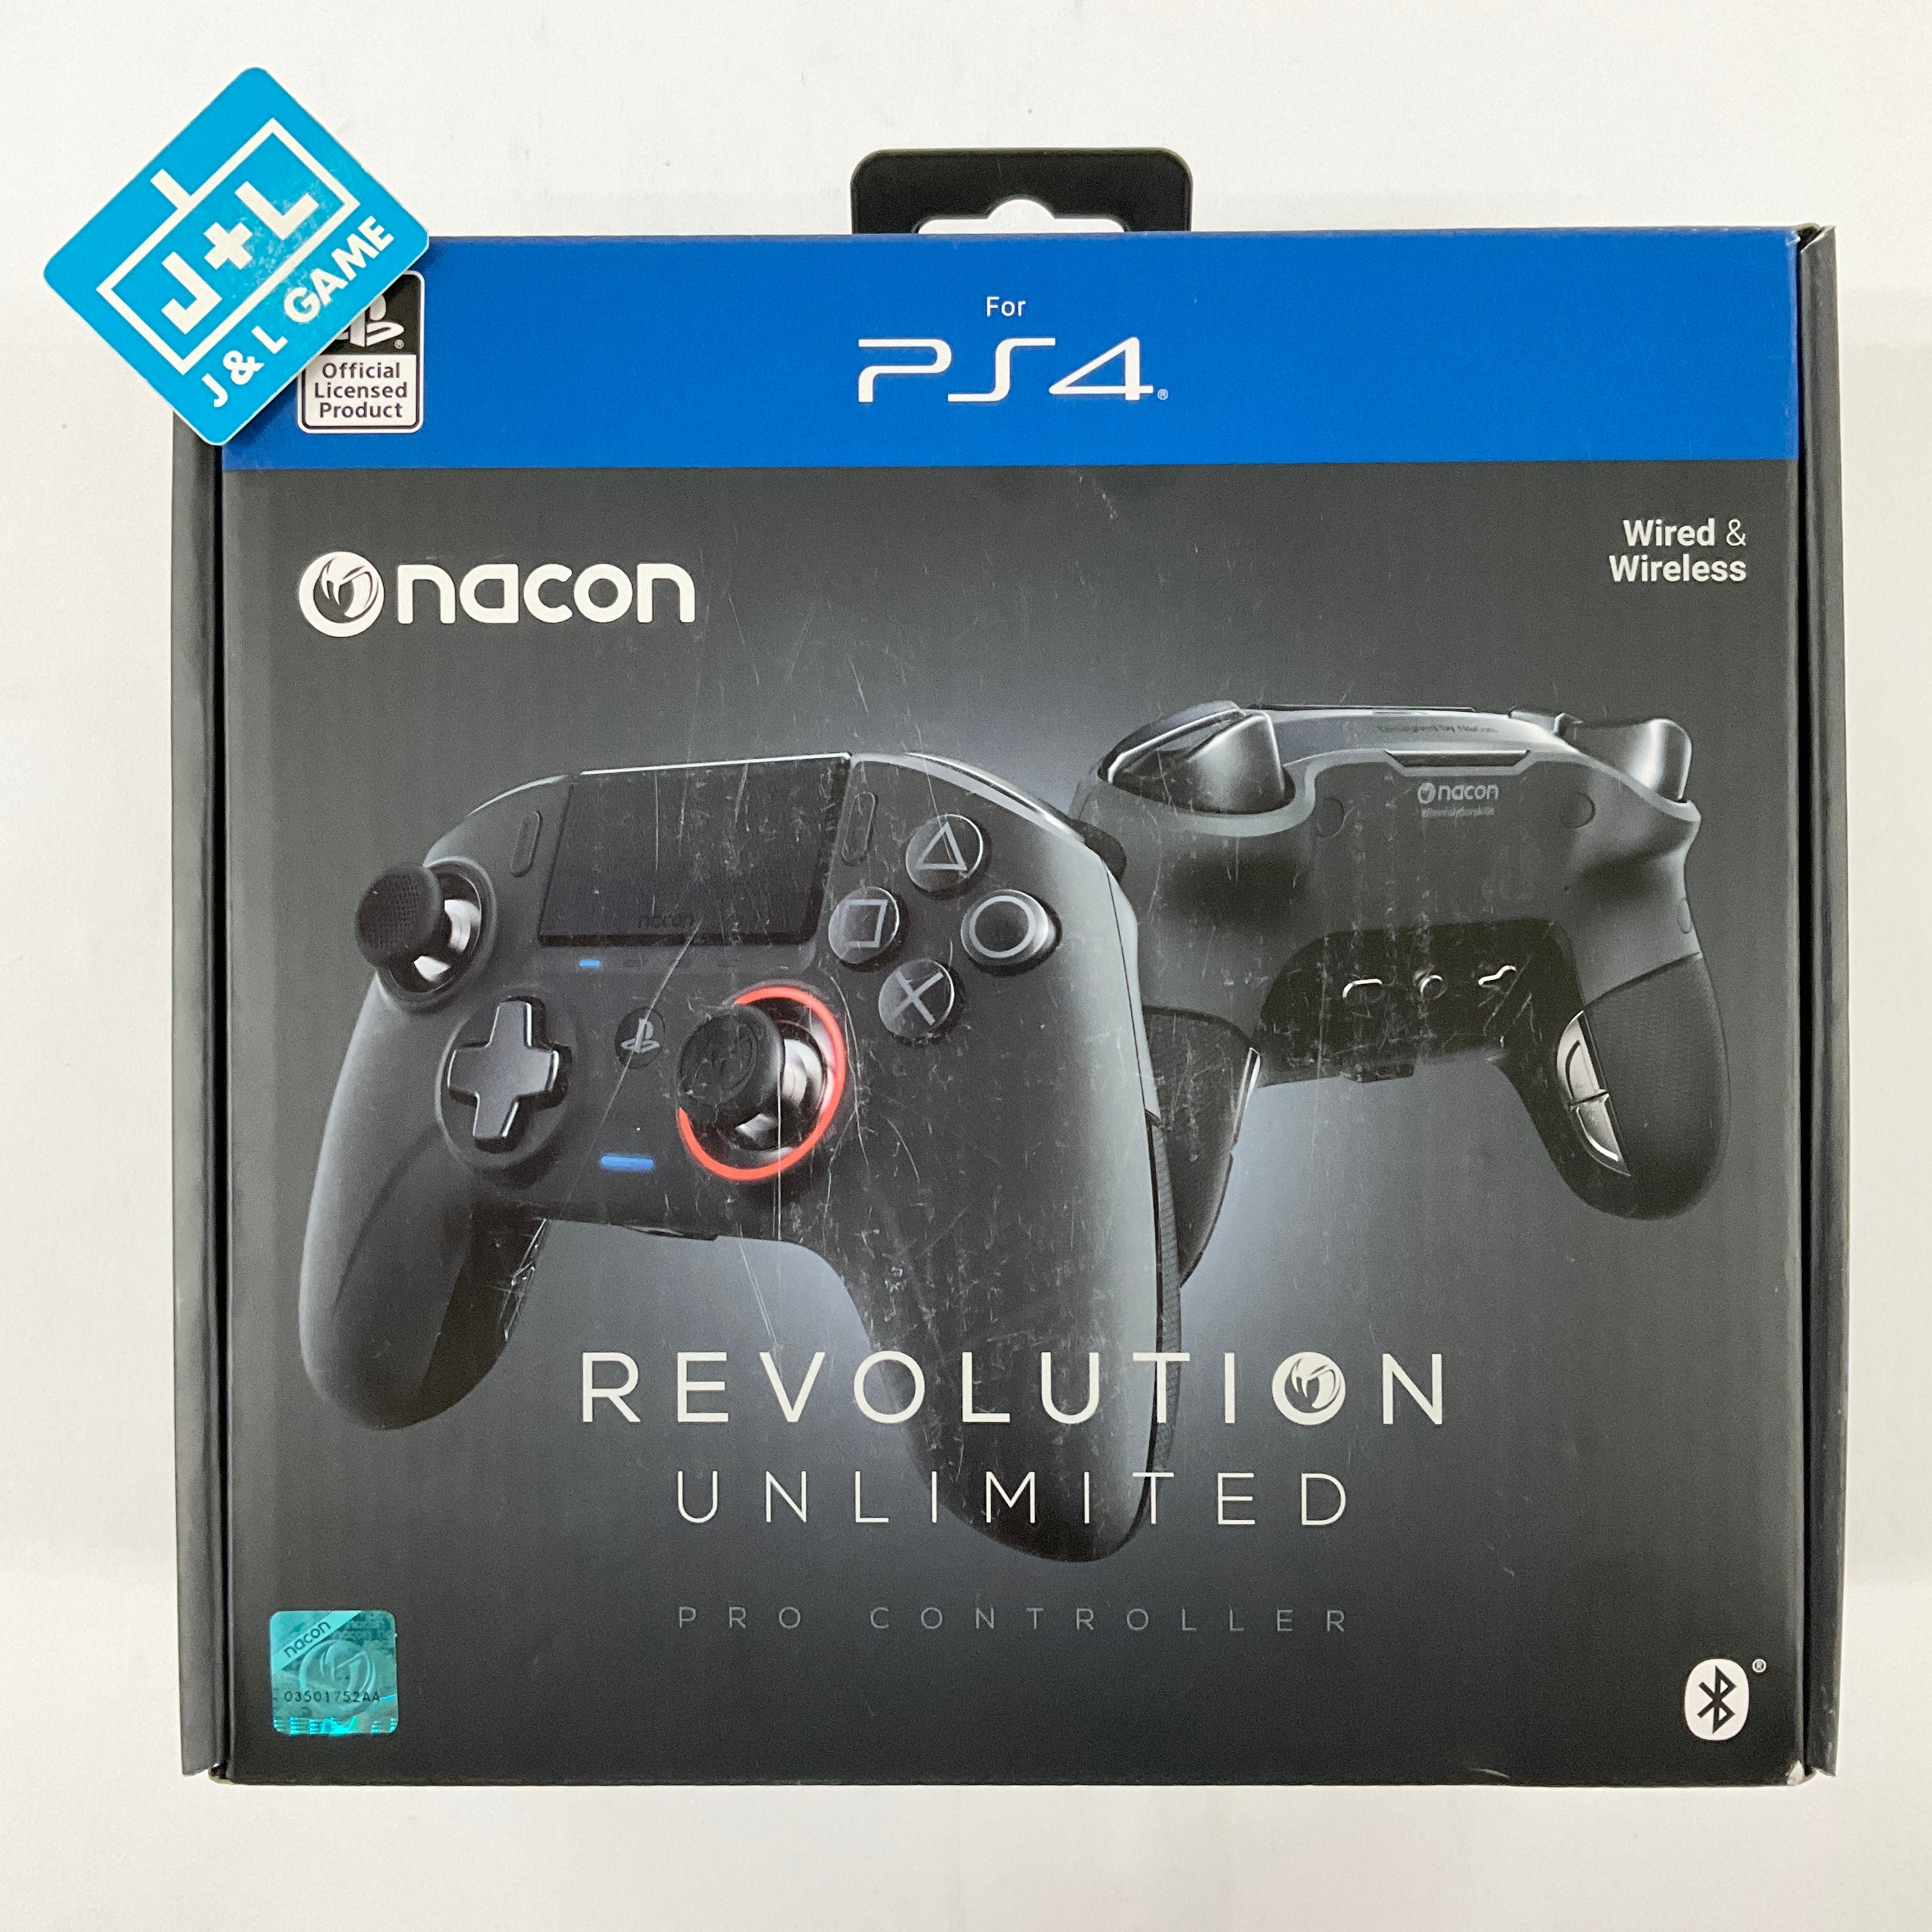 PS4 Controller: Purchase Wireless Controller - Nacon